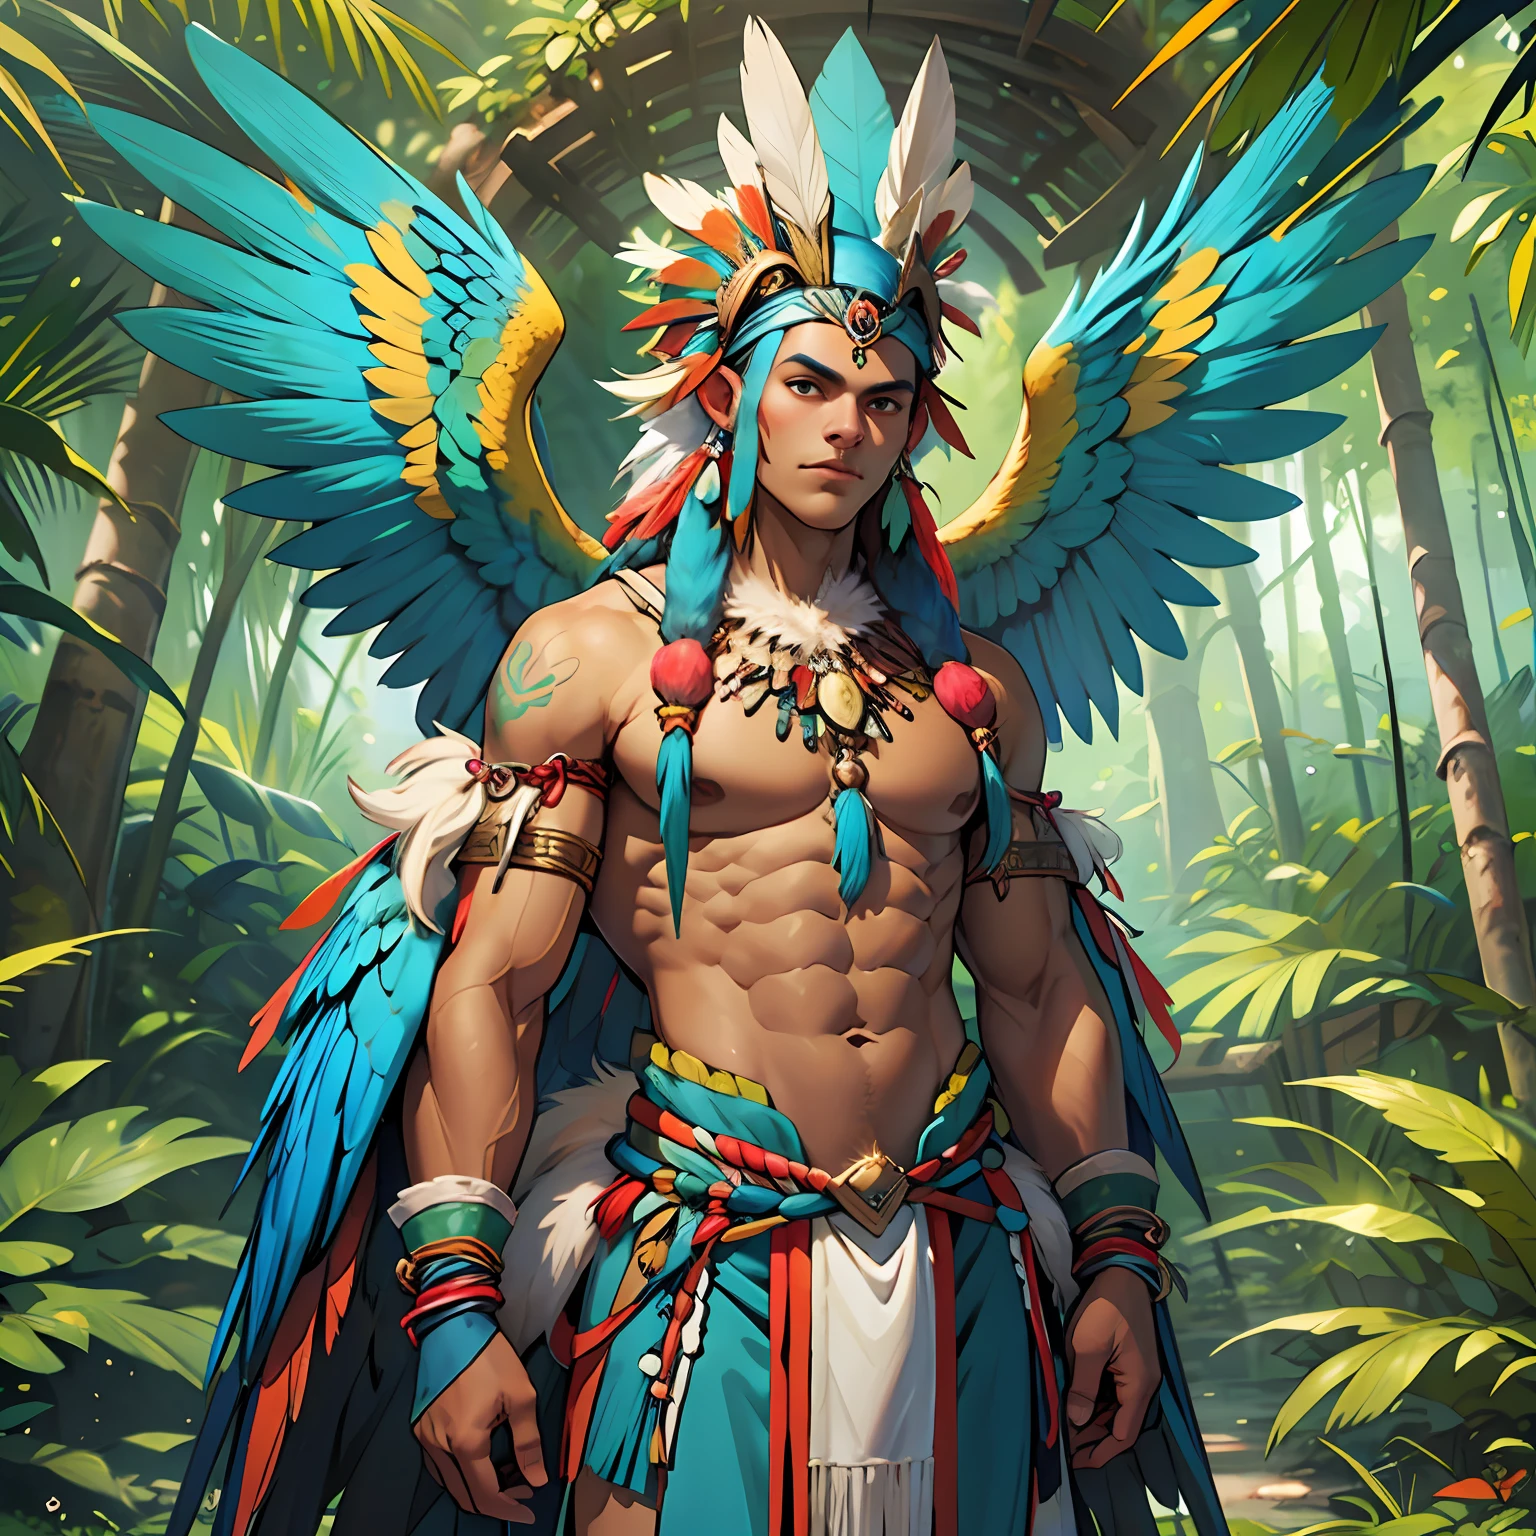 Anthropozoomorpher humanoider Gott mit brauner Haut, blauen Ara-Flügeln und menschlichem Körper sowie einigen blauen Ara-Federn am Körper, perfekter Körper, heiliger Wächter des Waldes, Brasilianisch, göttliche landschaft des amazonas, Tupi-Guarani-Kleidung